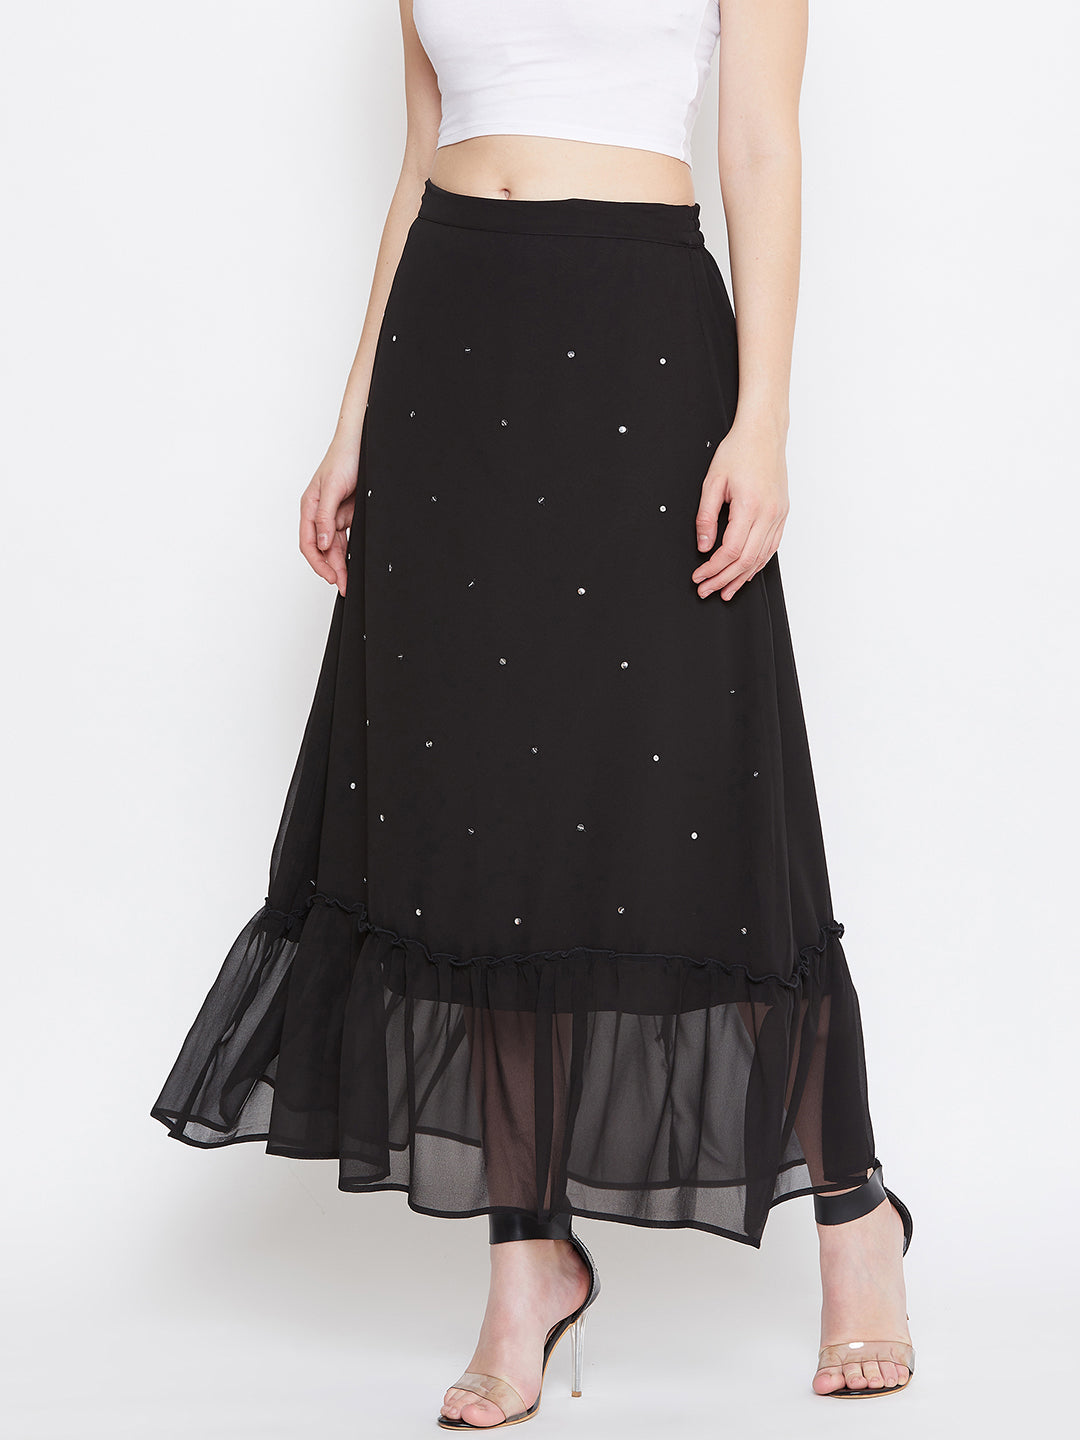 Black Hand Sequinned Gathered Skirt (Sku- BLJM20229).